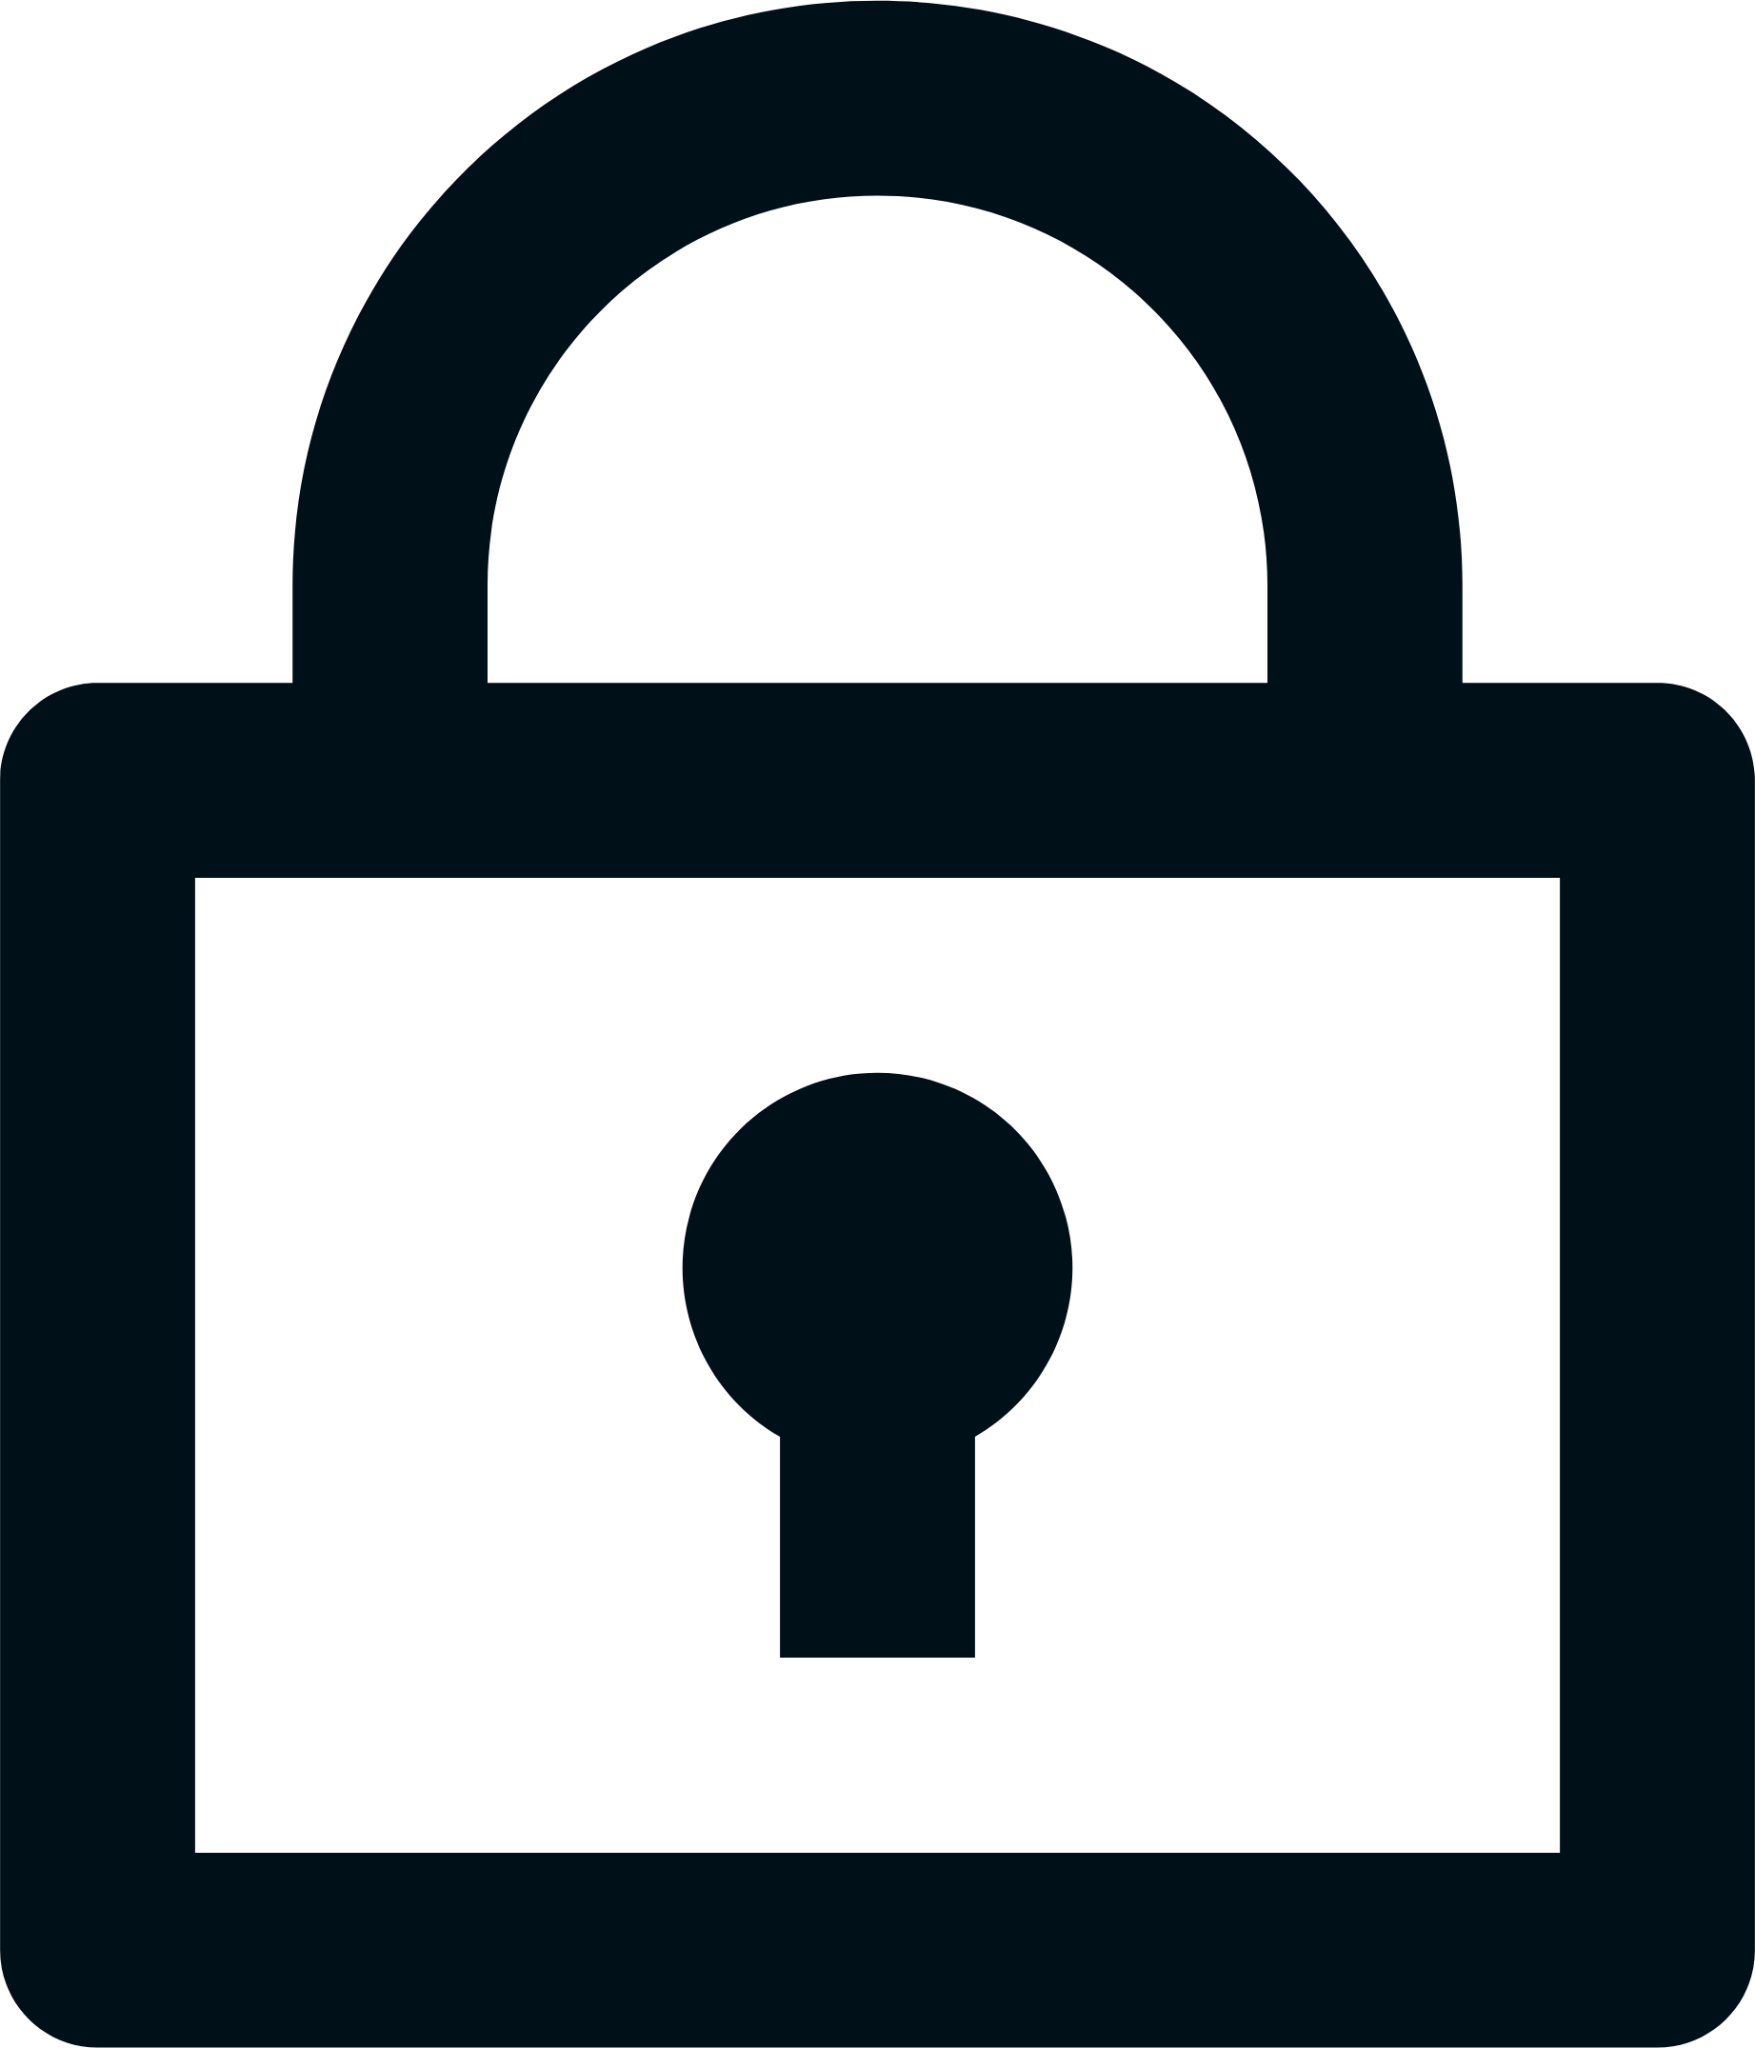 lock line icon